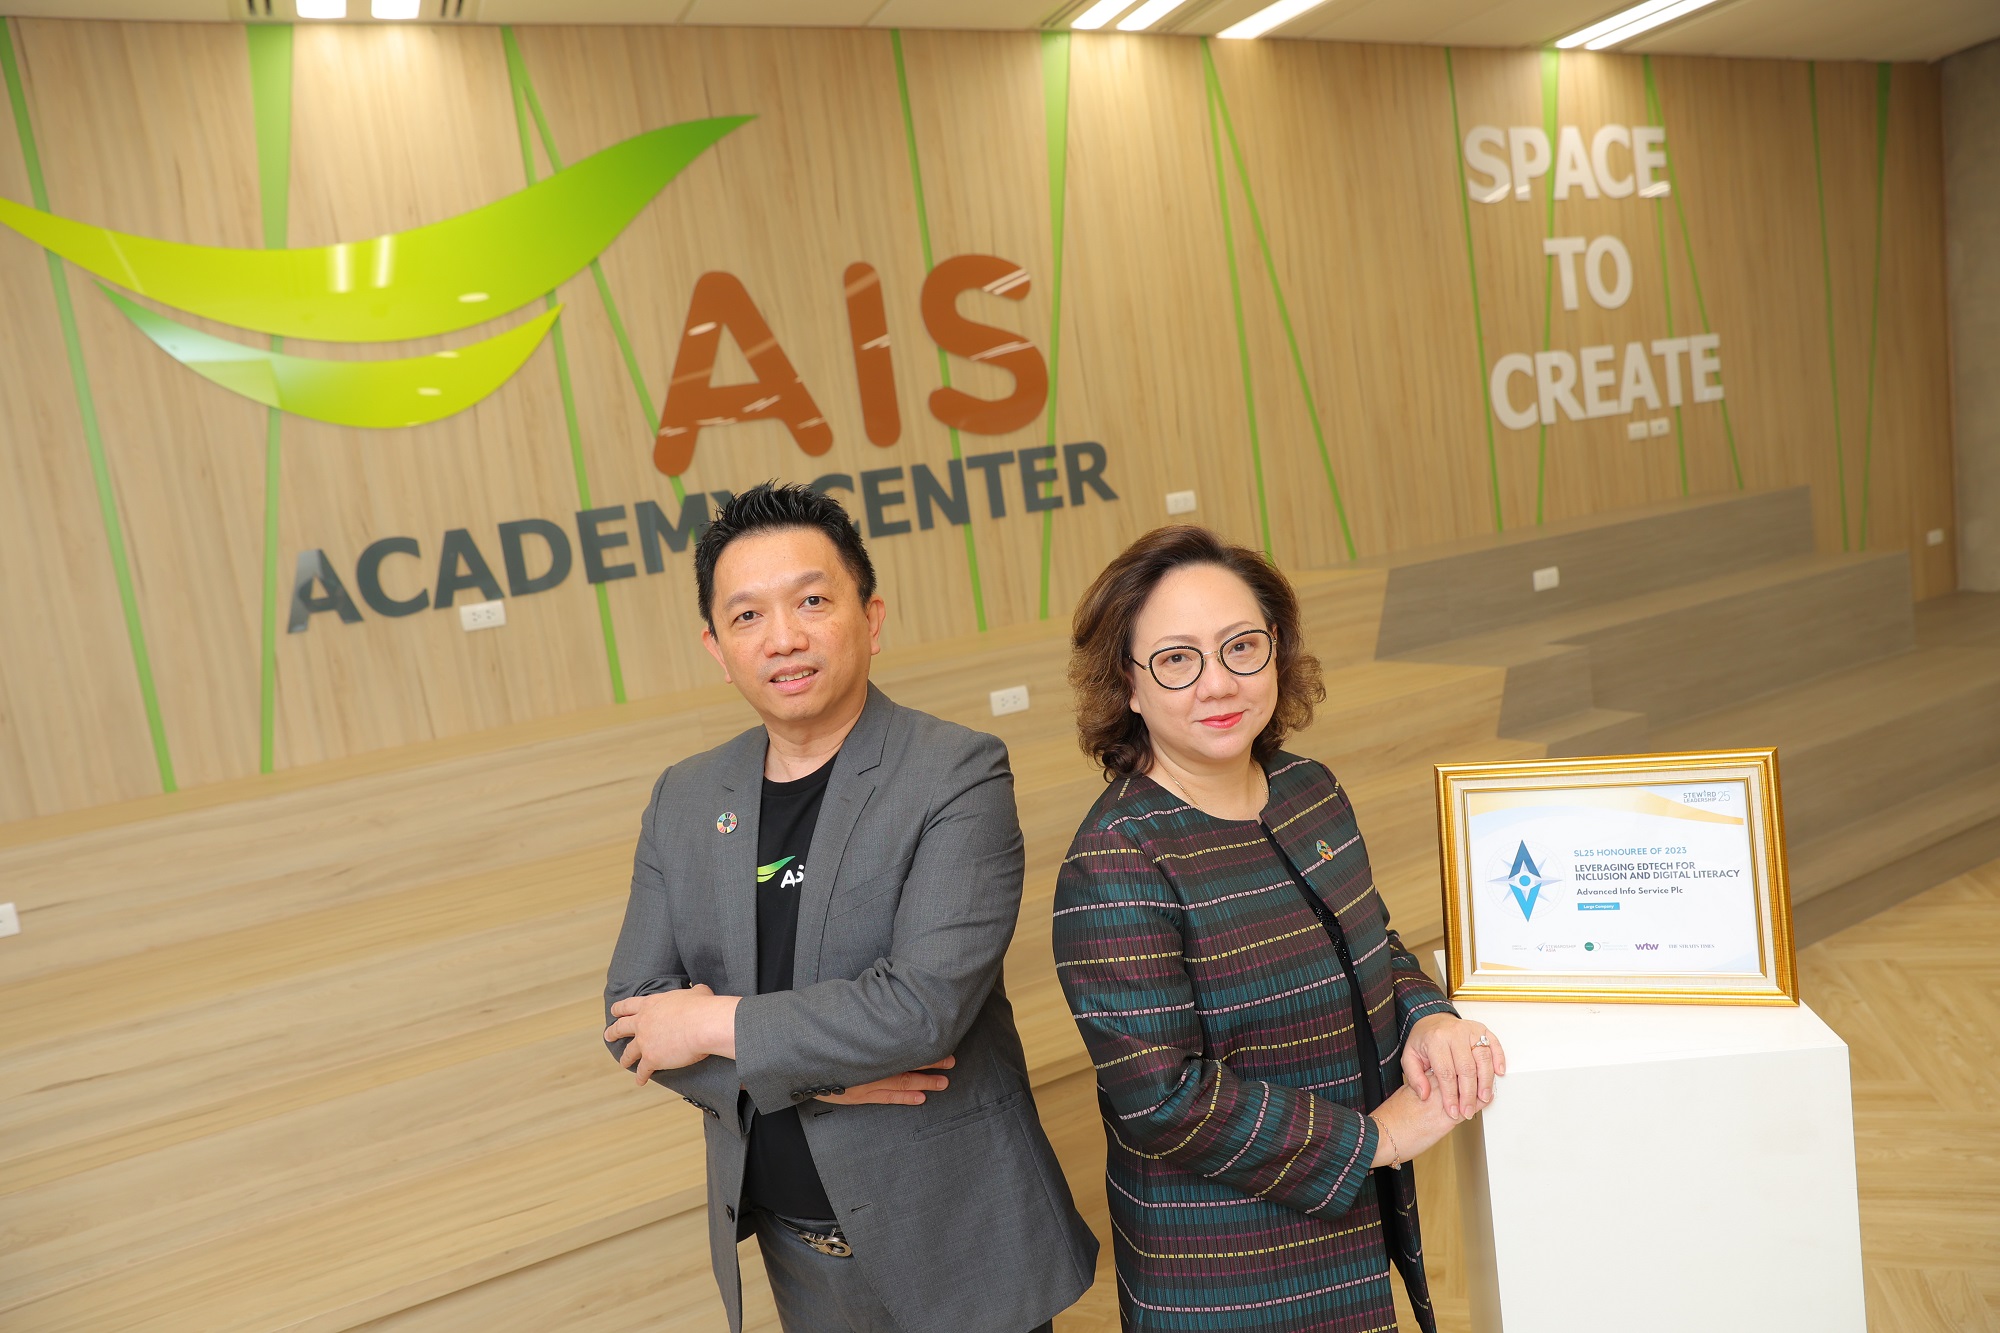 AIS โดย AIS ACADEMY ภูมิใจ องค์กรโทรคมไทย 1 เดียว ได้รับการยอมรับจากเวทีระดับสากล Steward Leadership 25 ในฐานะผู้ขับเคลื่อนทักษะดิจิทัลคนไทย EdTech